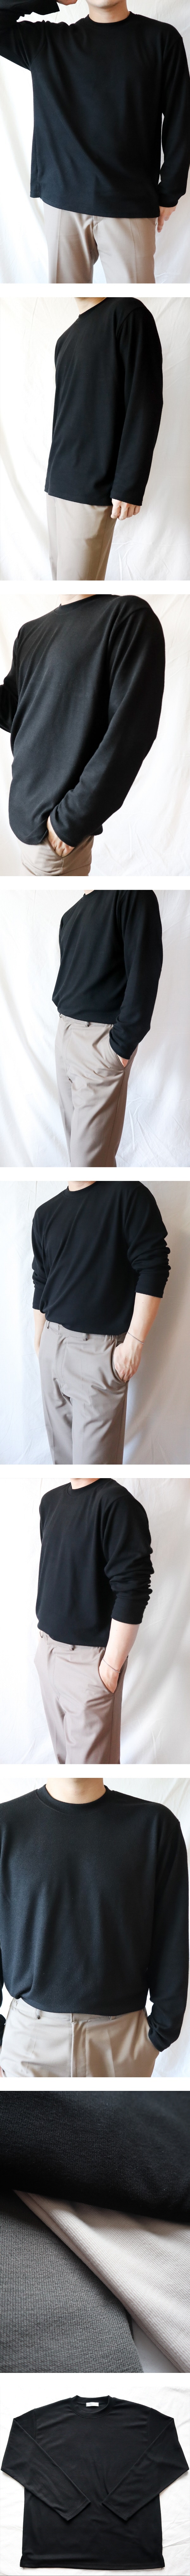 韩国KLEN 舒适 针织 长袖T恤 黑色 Free Size